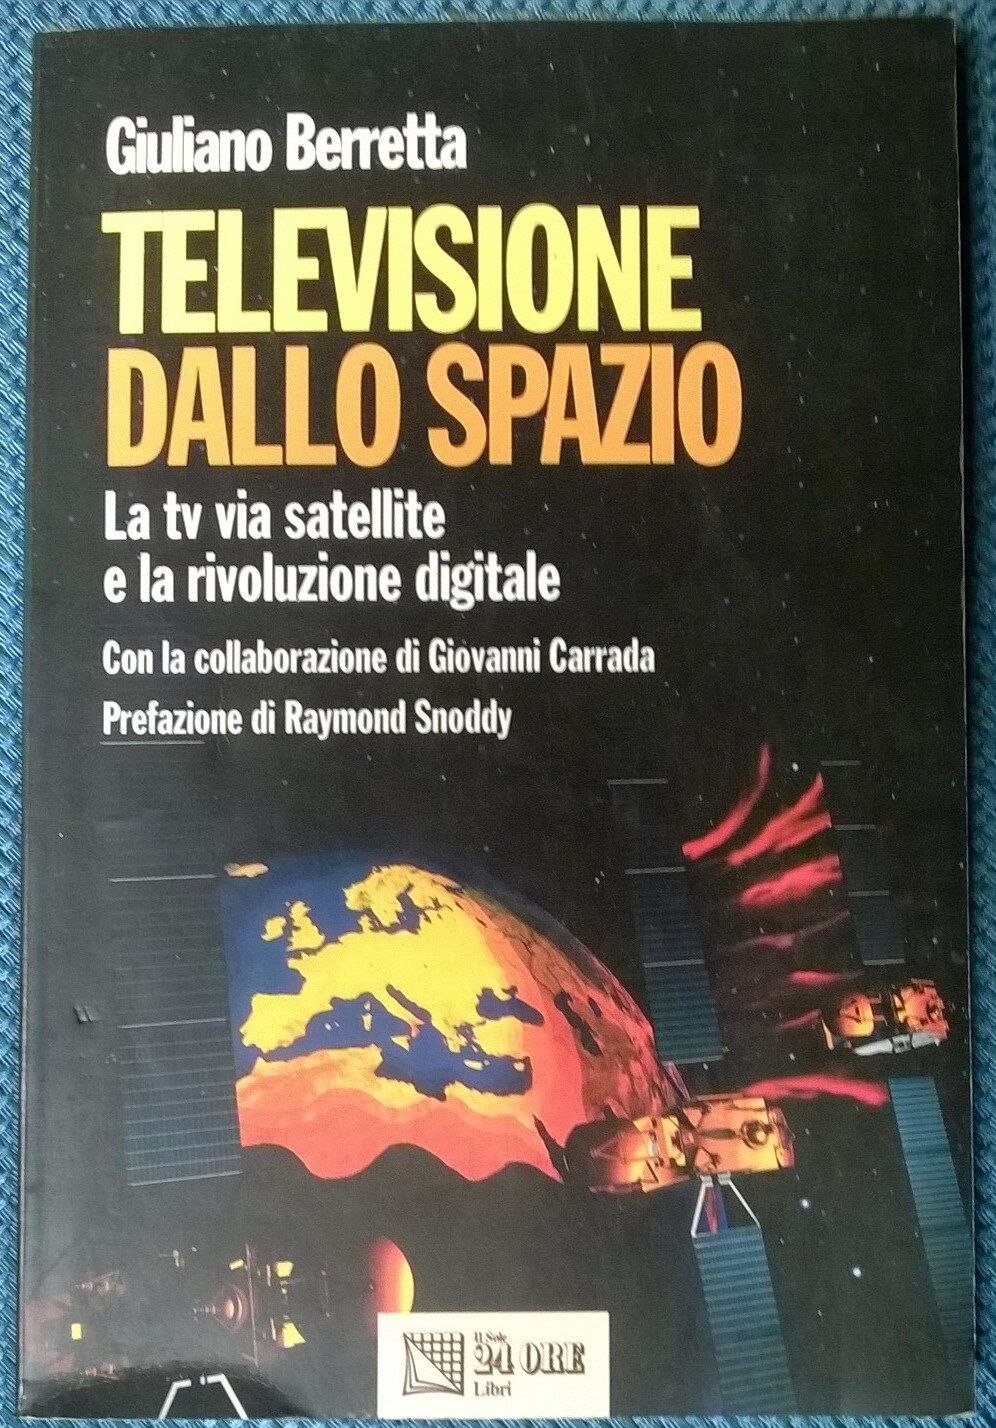 Televisione dallo spazio - Giuliano Berretta - IlSole24ore, 1997 - L